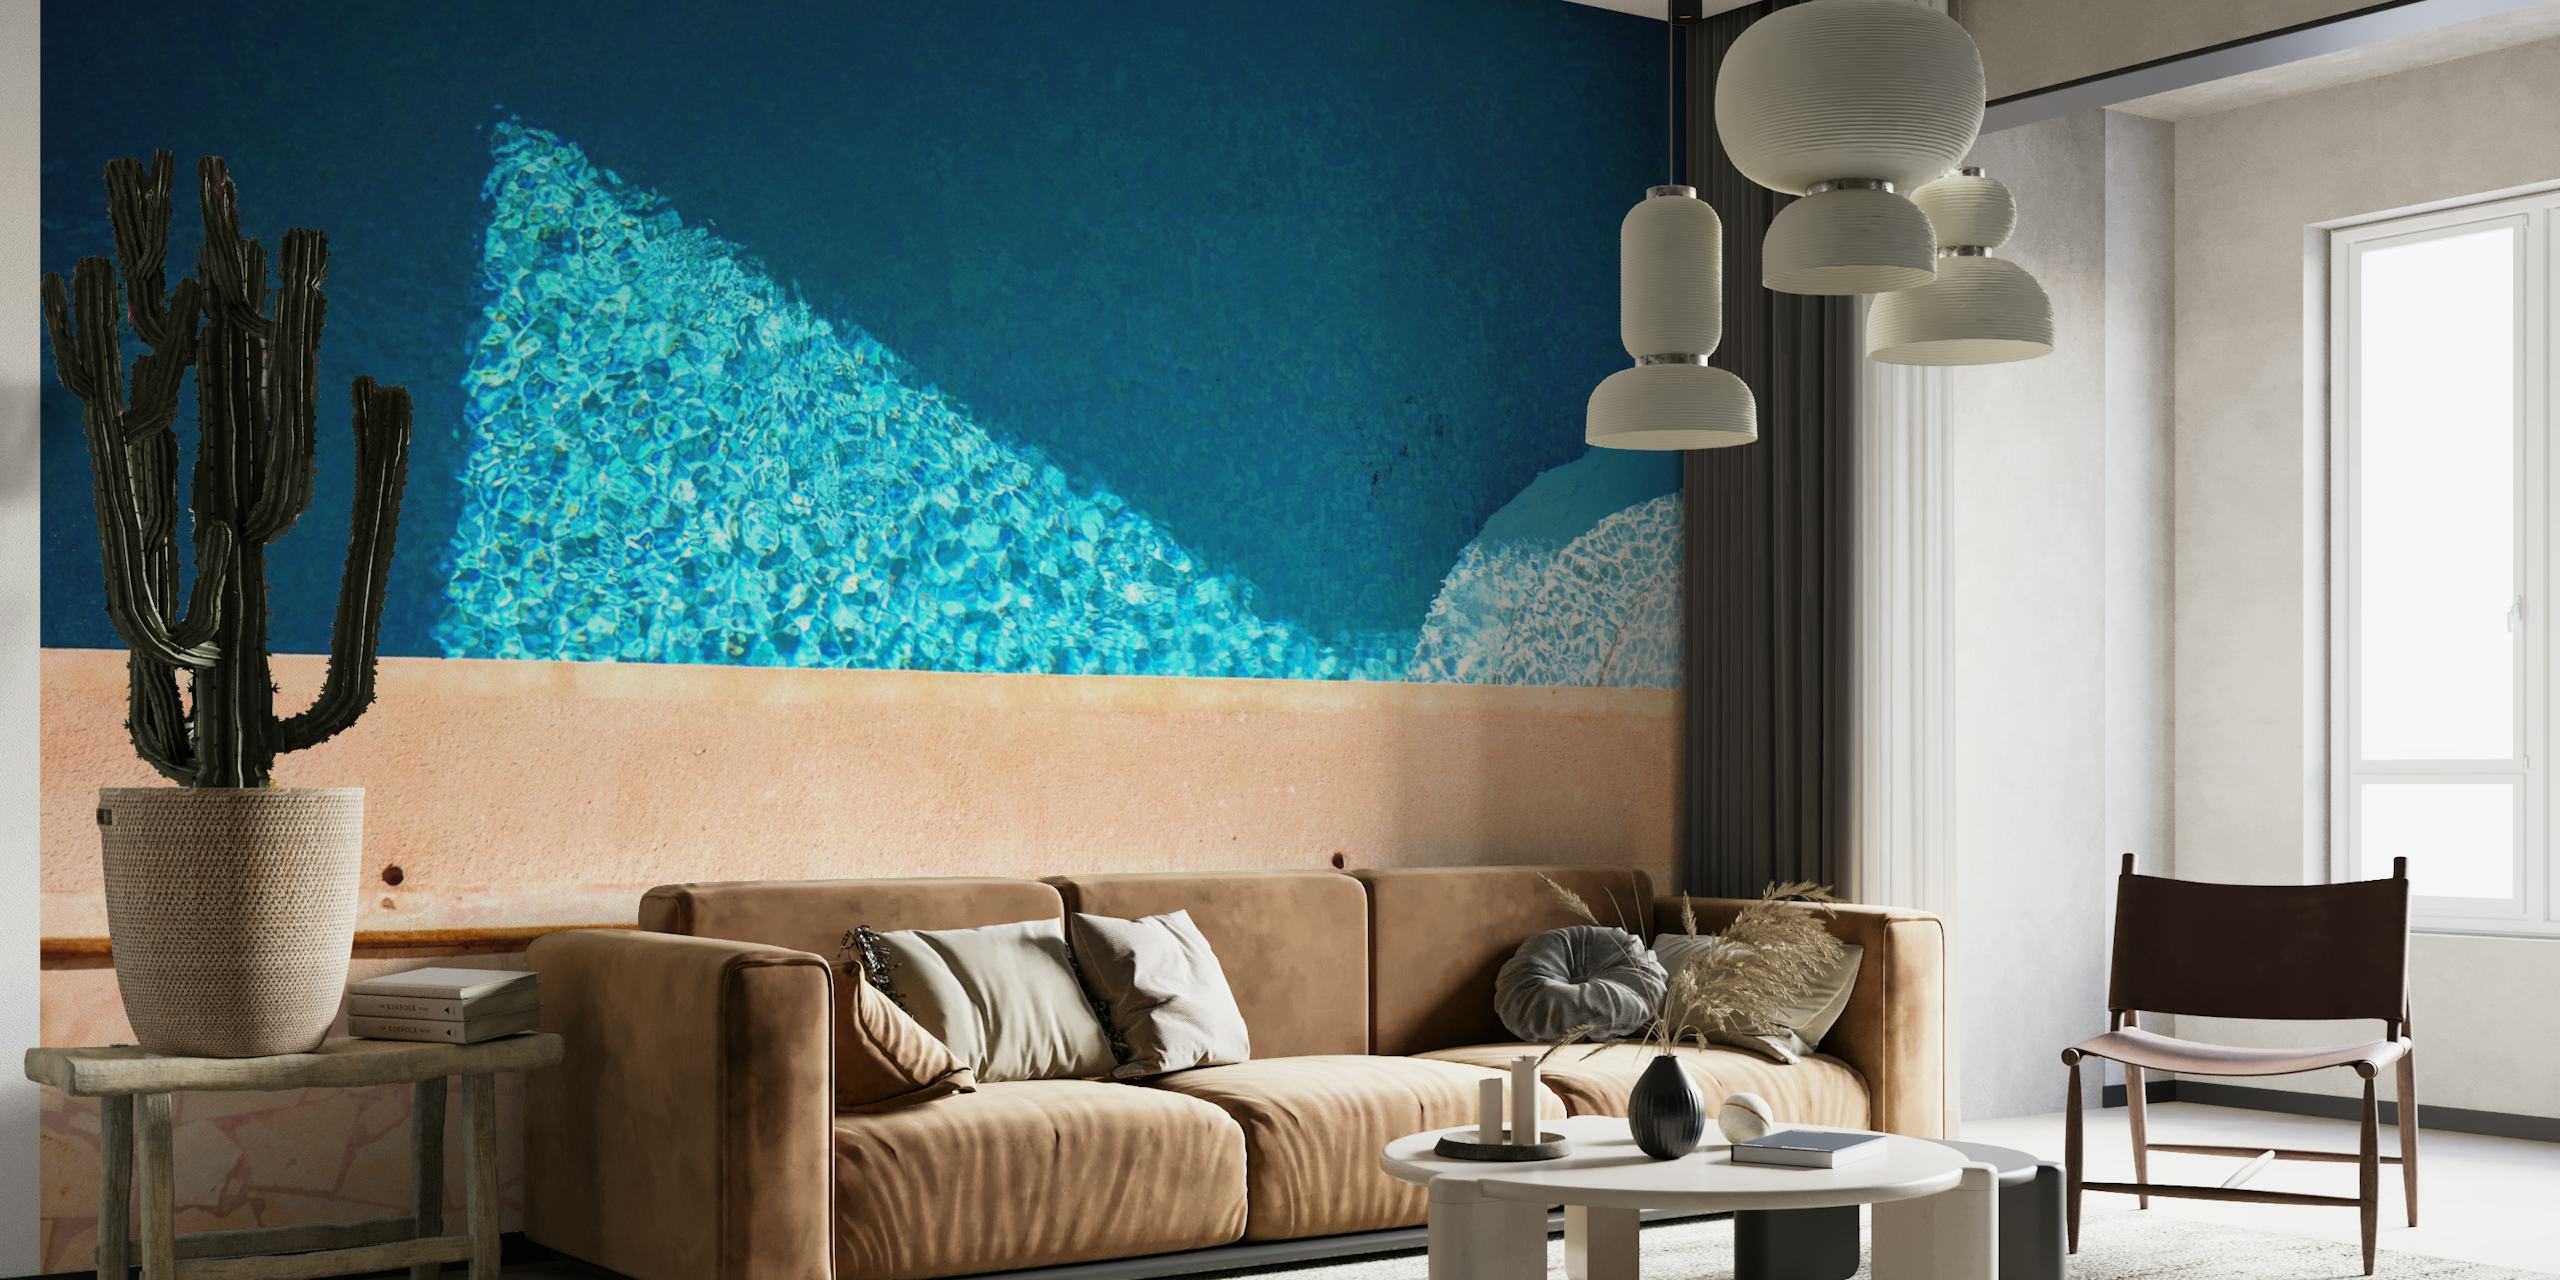 Papier peint California Pool Dream représentant les eaux bleues fraîches d'une piscine avec des carreaux en terre cuite